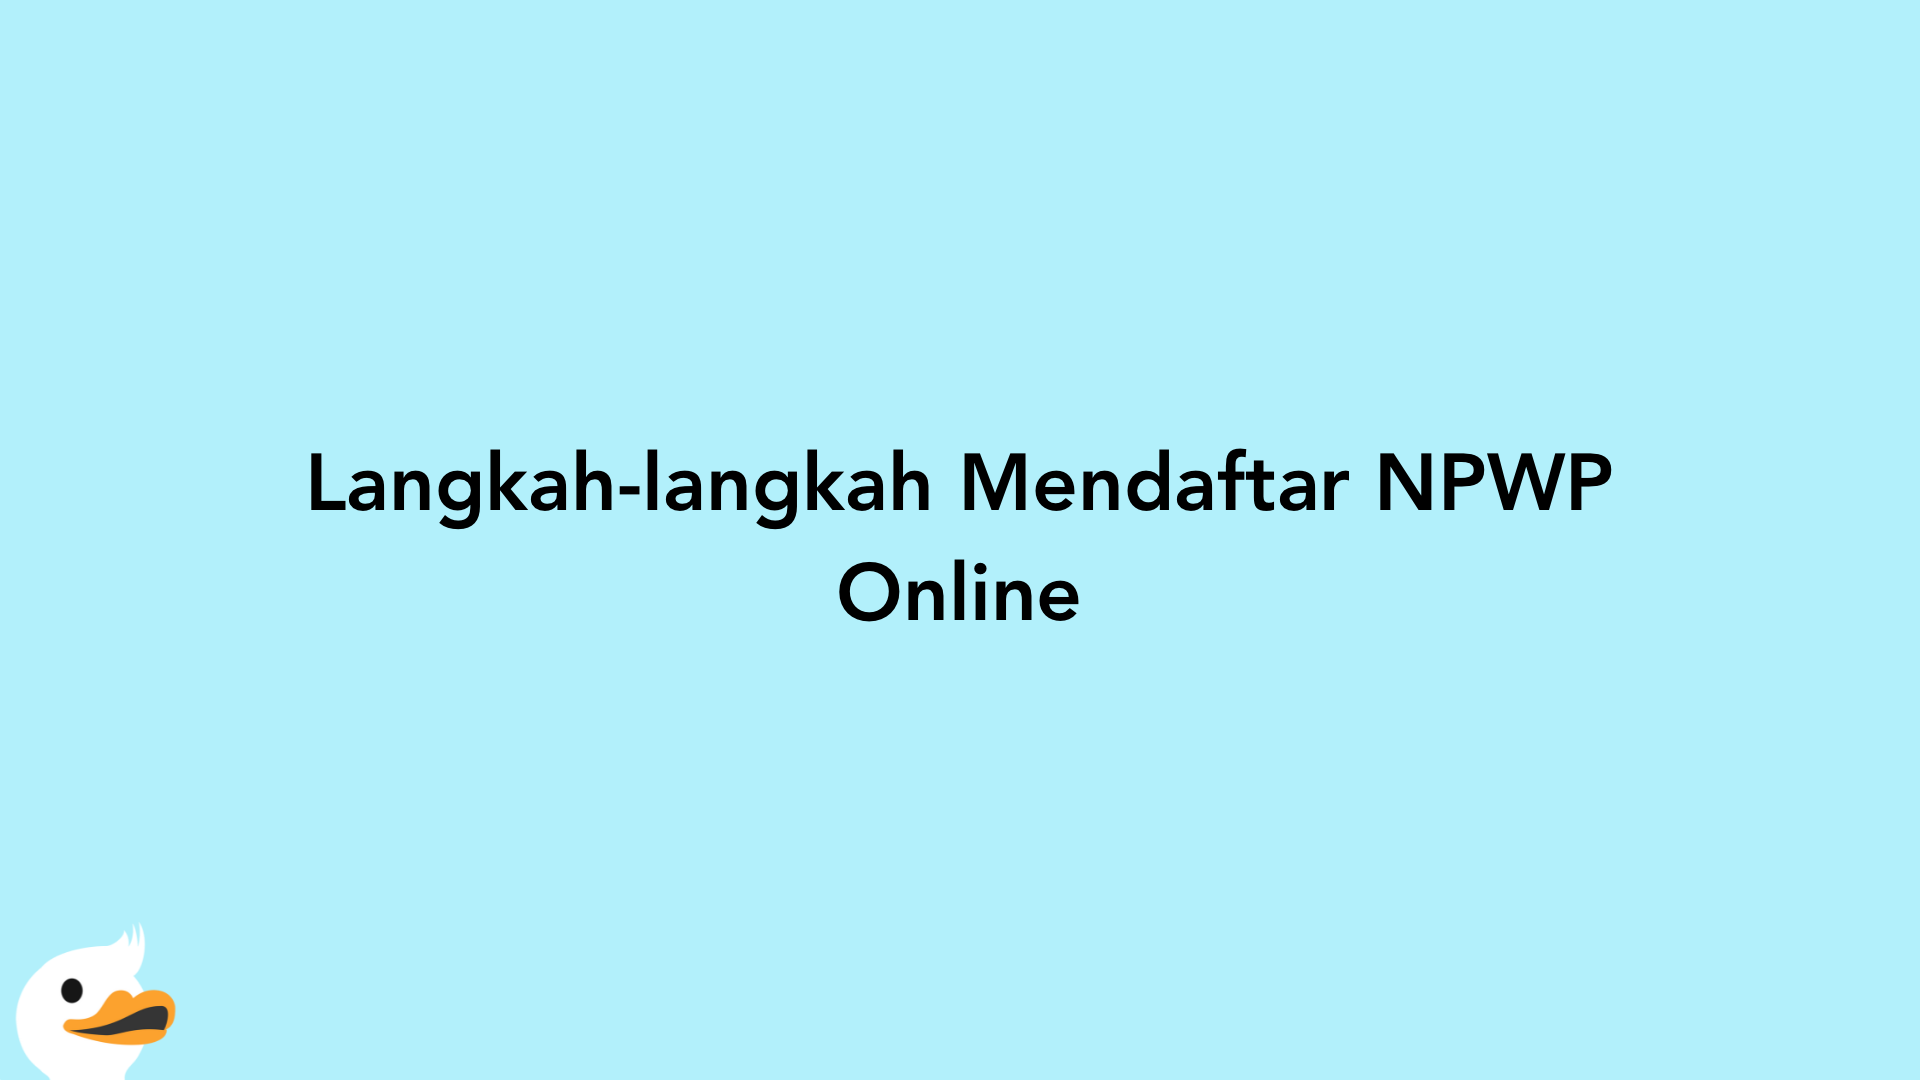 Langkah-langkah Mendaftar NPWP Online